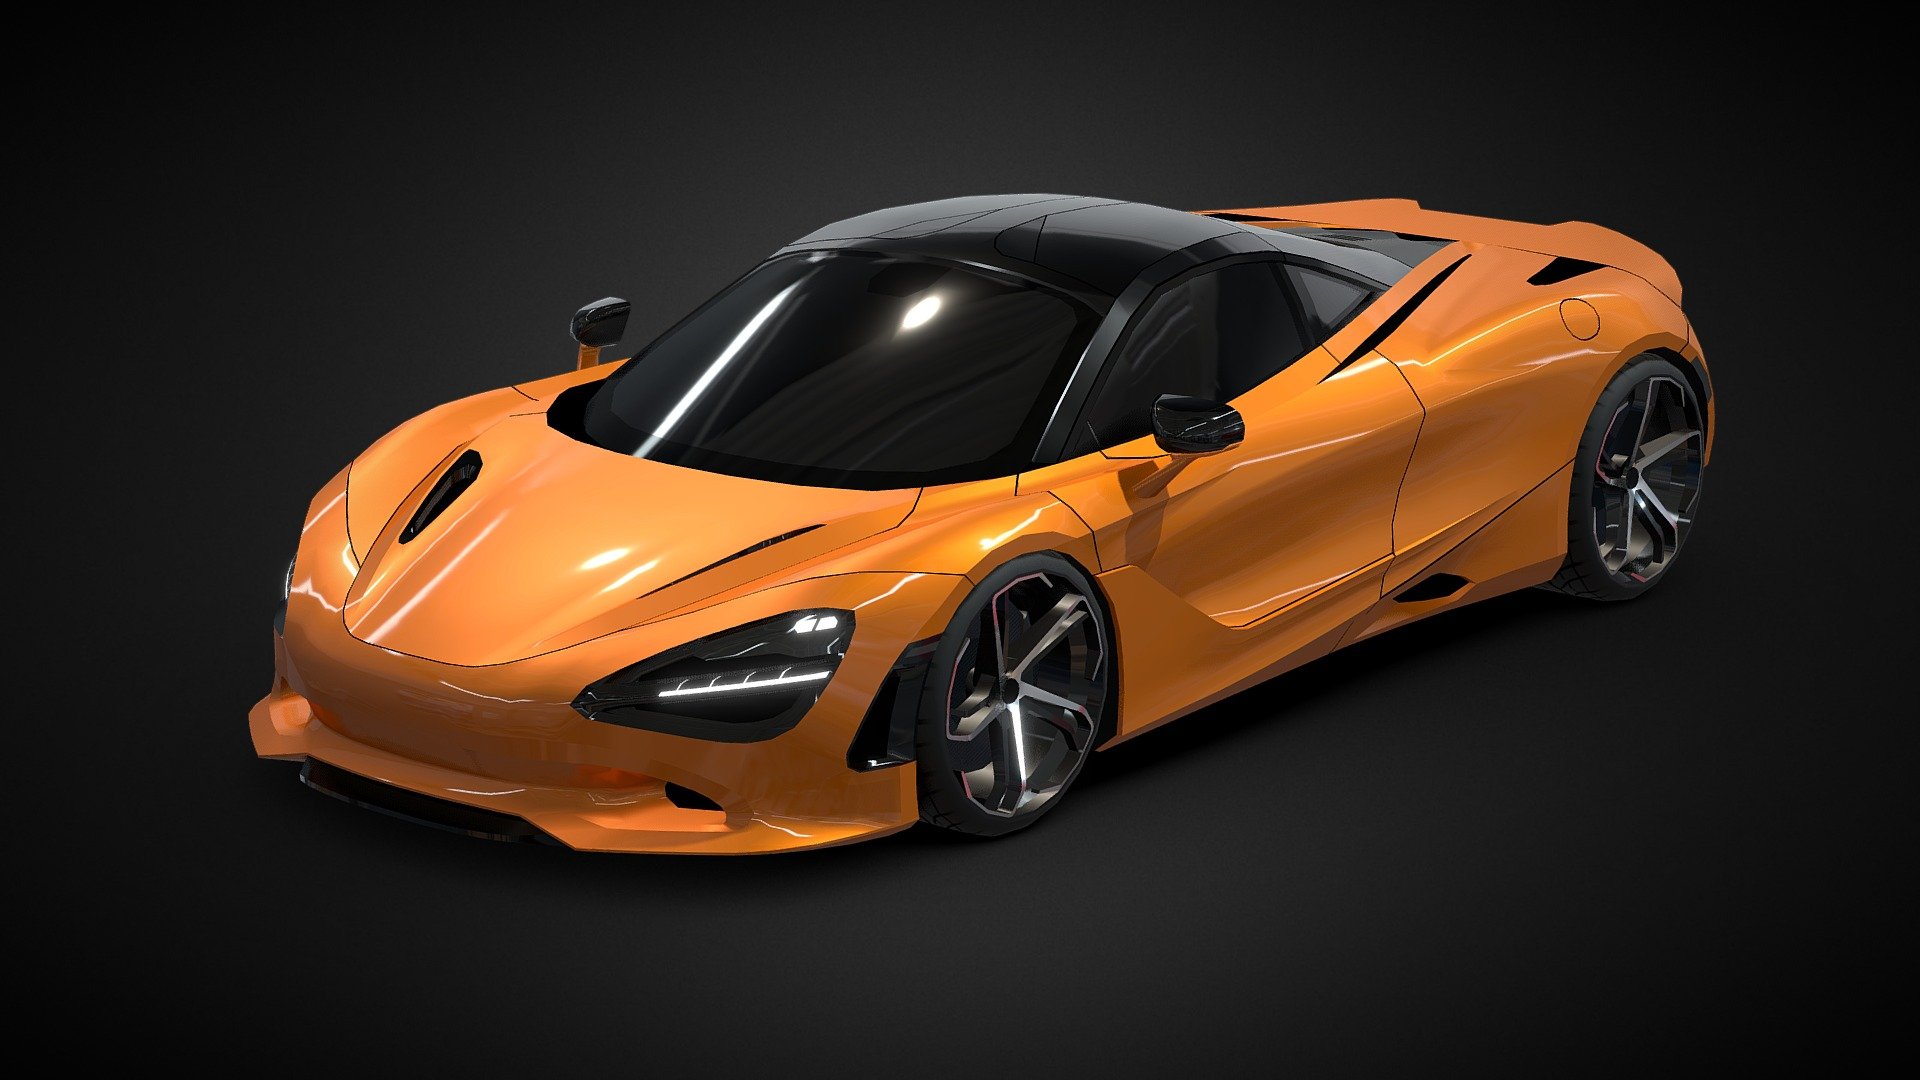 Low-poly 3d model of McLaren 750S created in Blender 3.6

Polygons: 7,173  /  Vertices: 7,962  /  Triangles: 14,726 - McLaren 750S (low-poly) - 3D model by Rossty (@rossty3d) 3d model